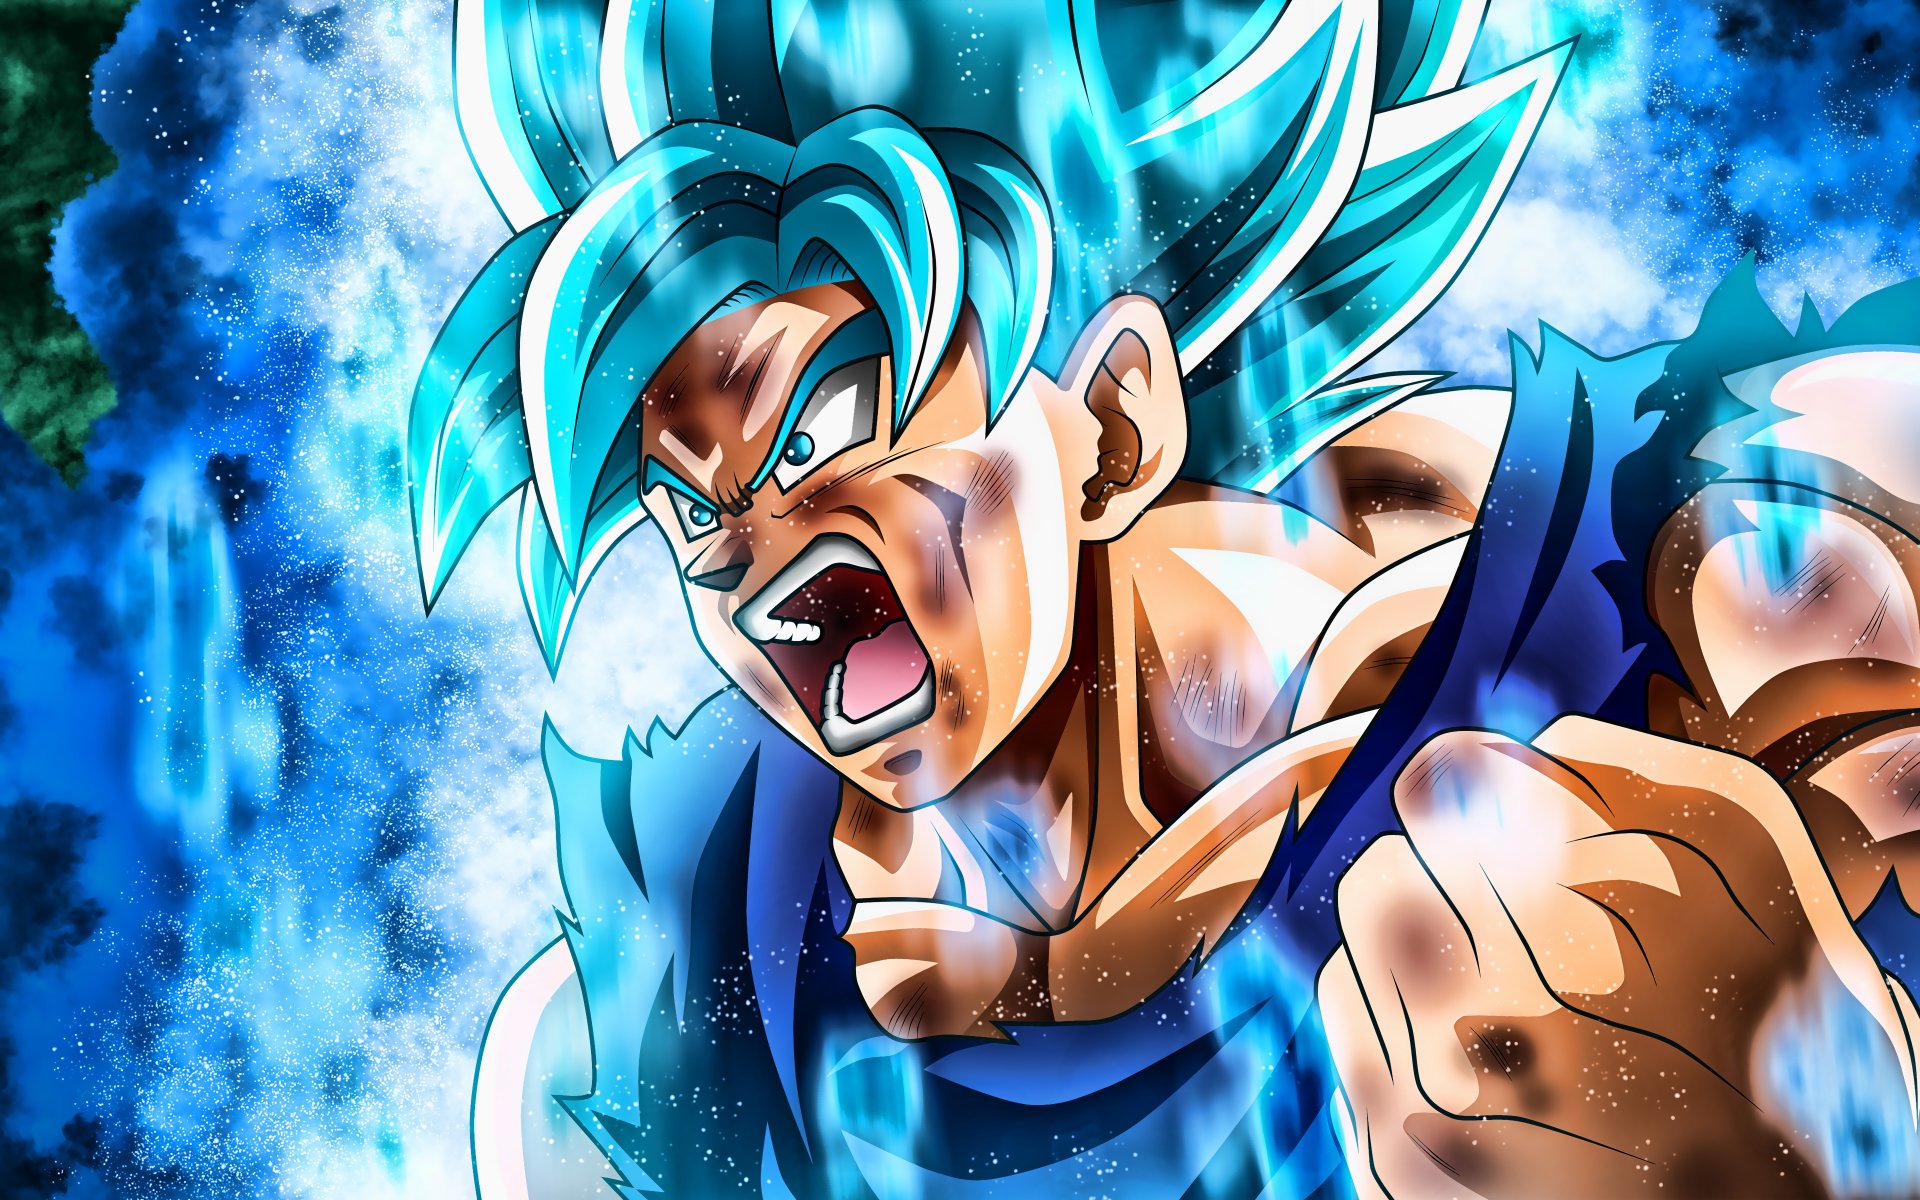 Goku Ssj Blue - Giới thiệu với bạn hình ảnh Goku Ssj Blue đầy ngầu và uy lực. Hình ảnh Goku trong trang phục màu xanh lam đang sử dụng thuật Kamehameha sẽ khiến bạn phải trầm trồ trước sức mạnh và sự đỉnh cao của nhân vật này.